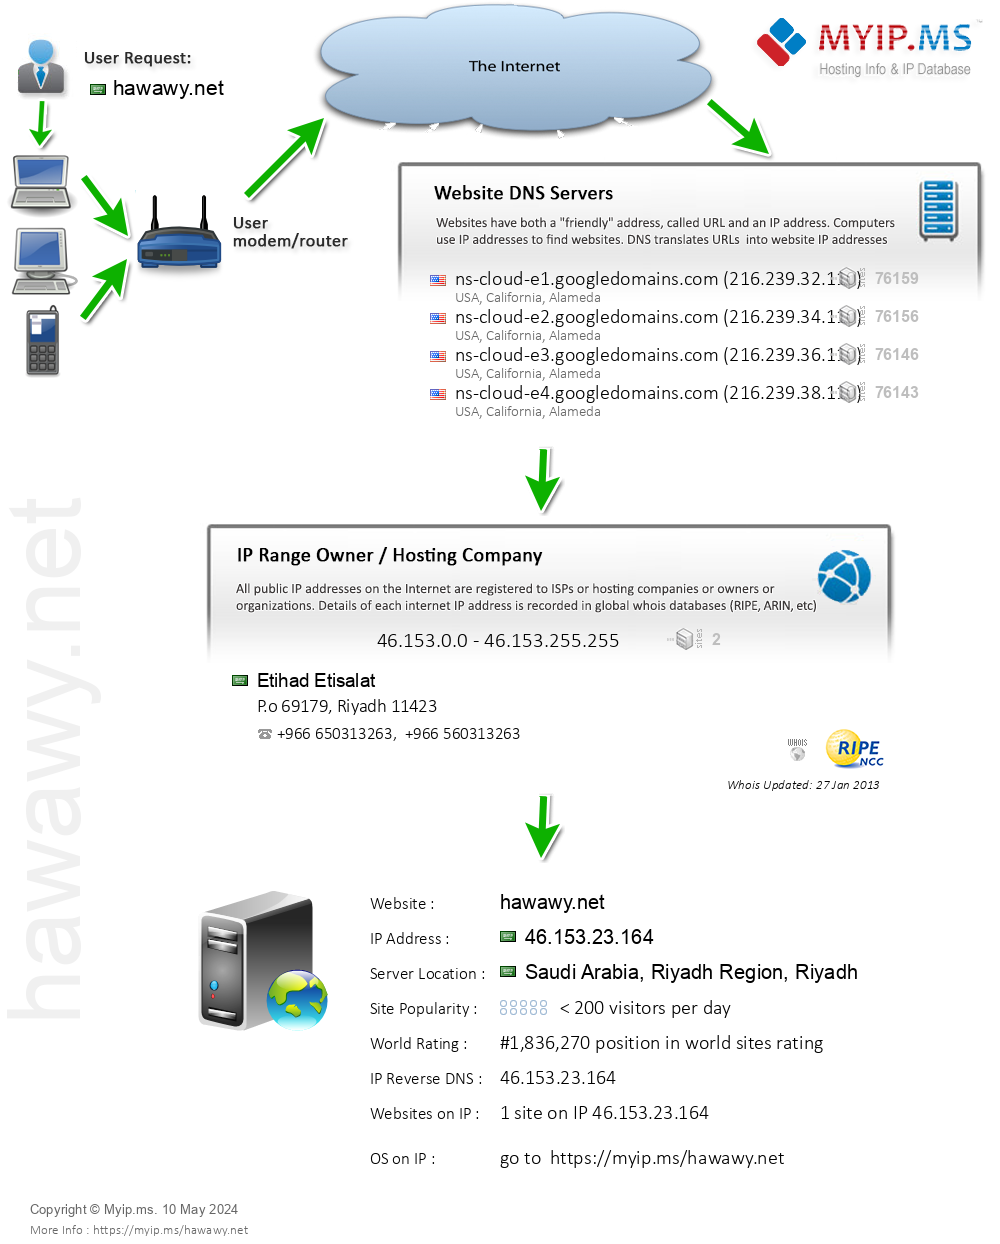 Hawawy.net - Website Hosting Visual IP Diagram